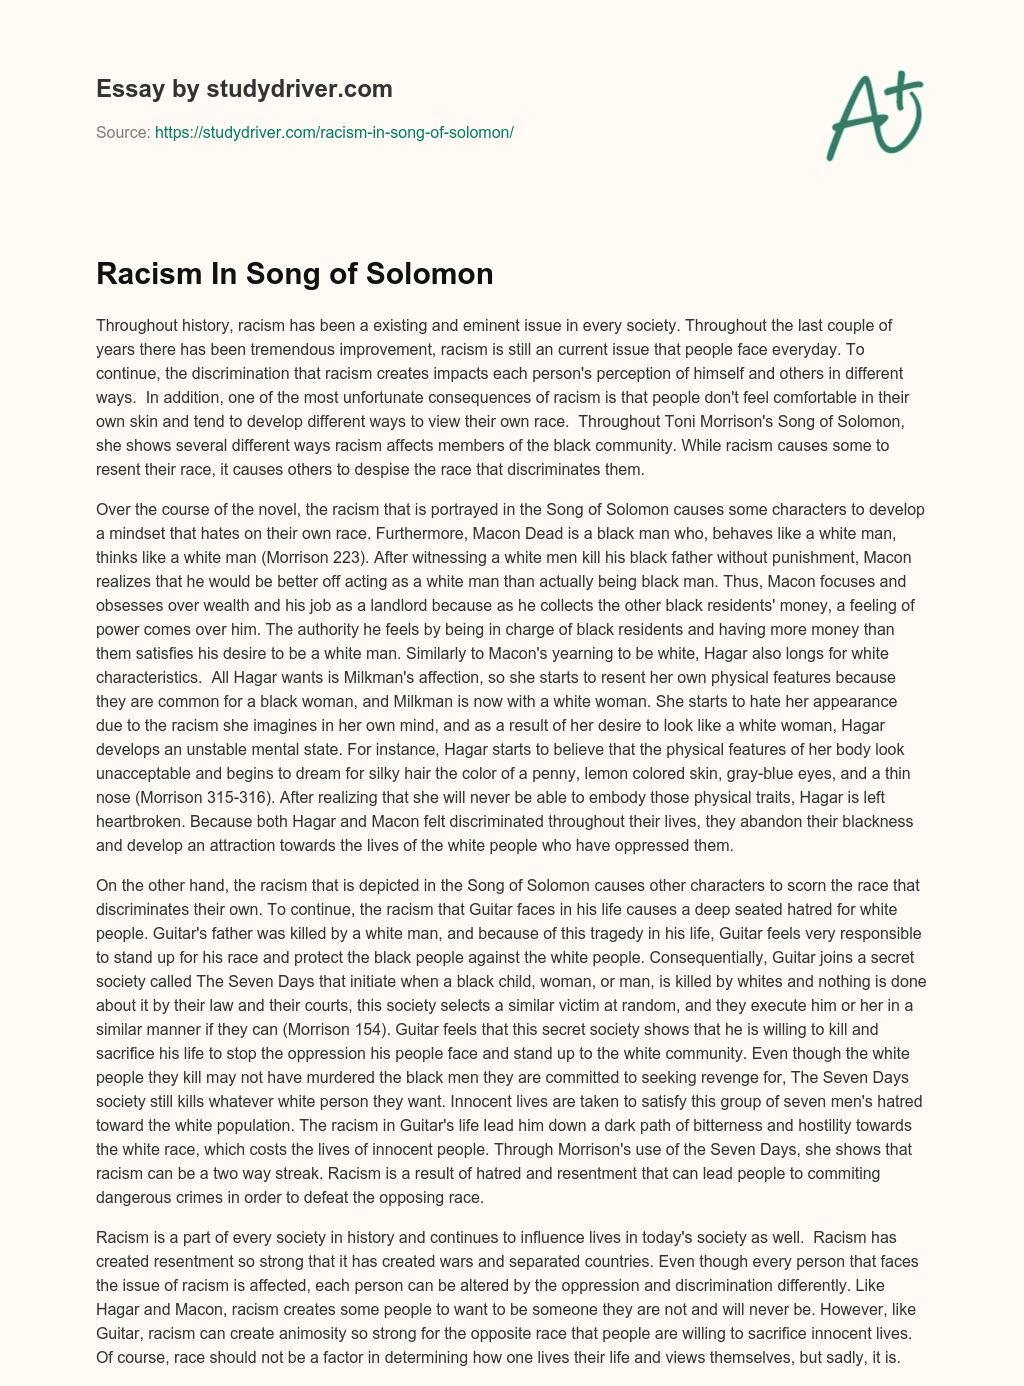 Racism in Song of Solomon essay